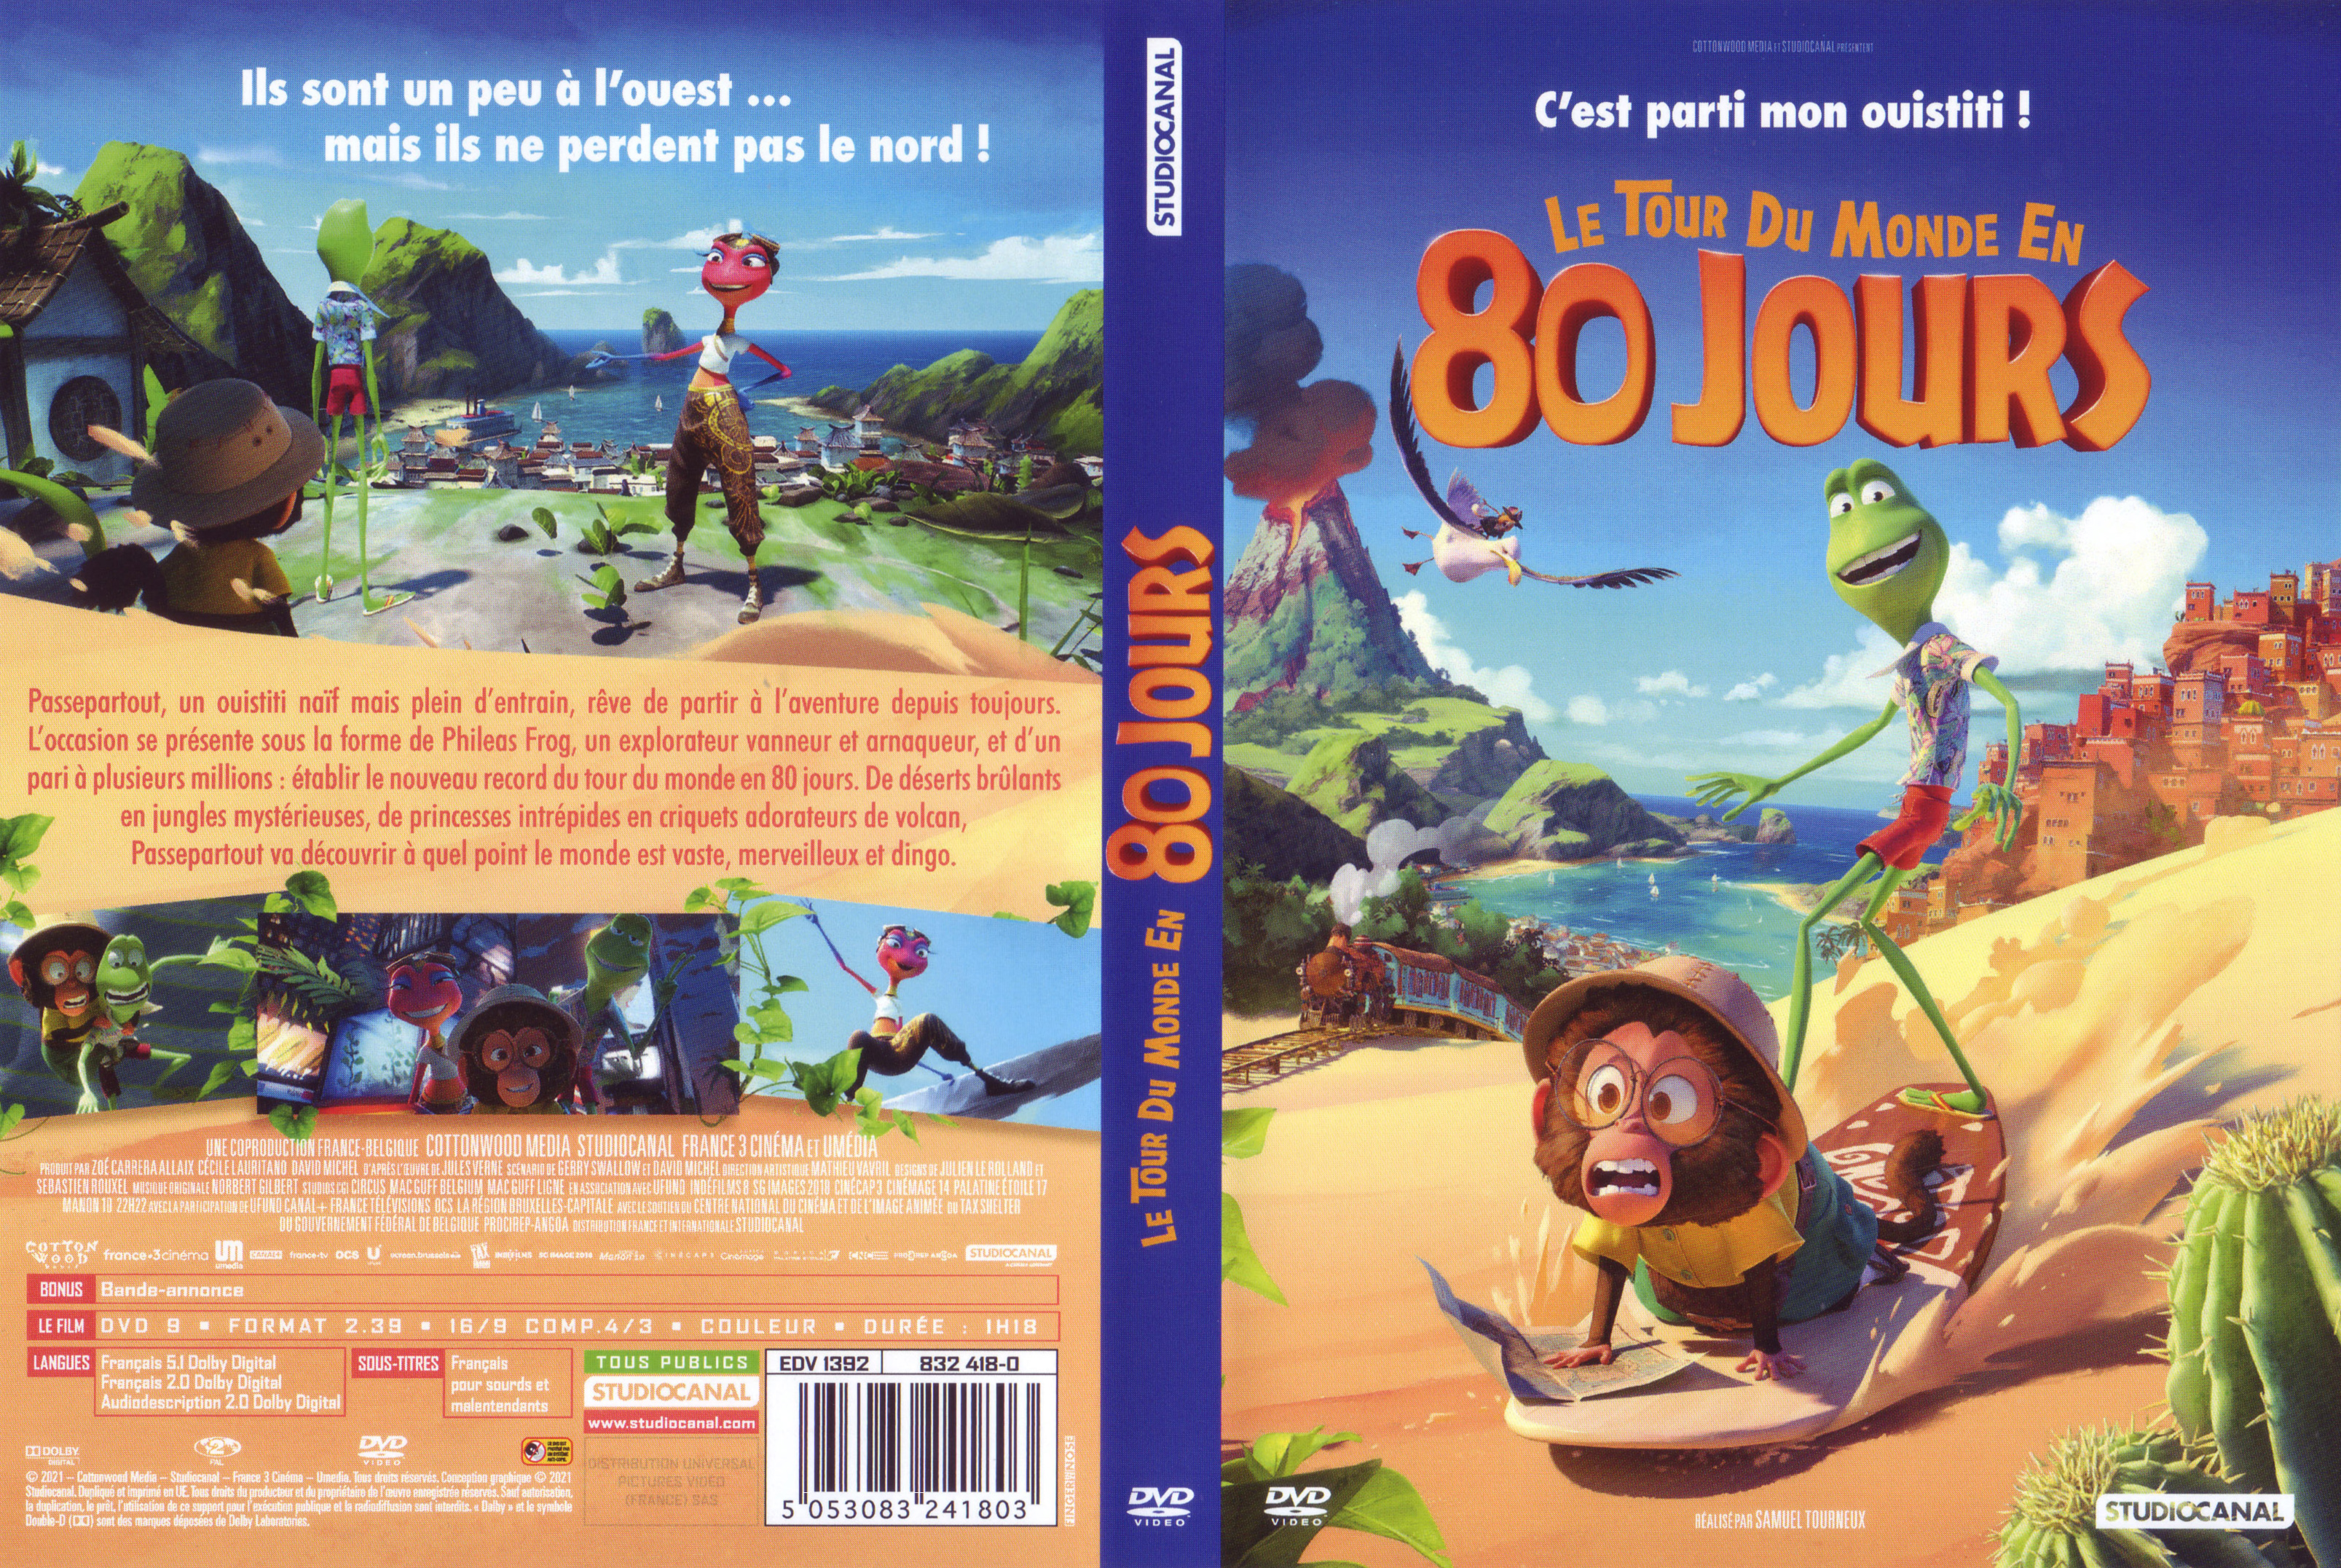 Jaquette DVD Le tour du monde en 80 jours (Animation 2021)